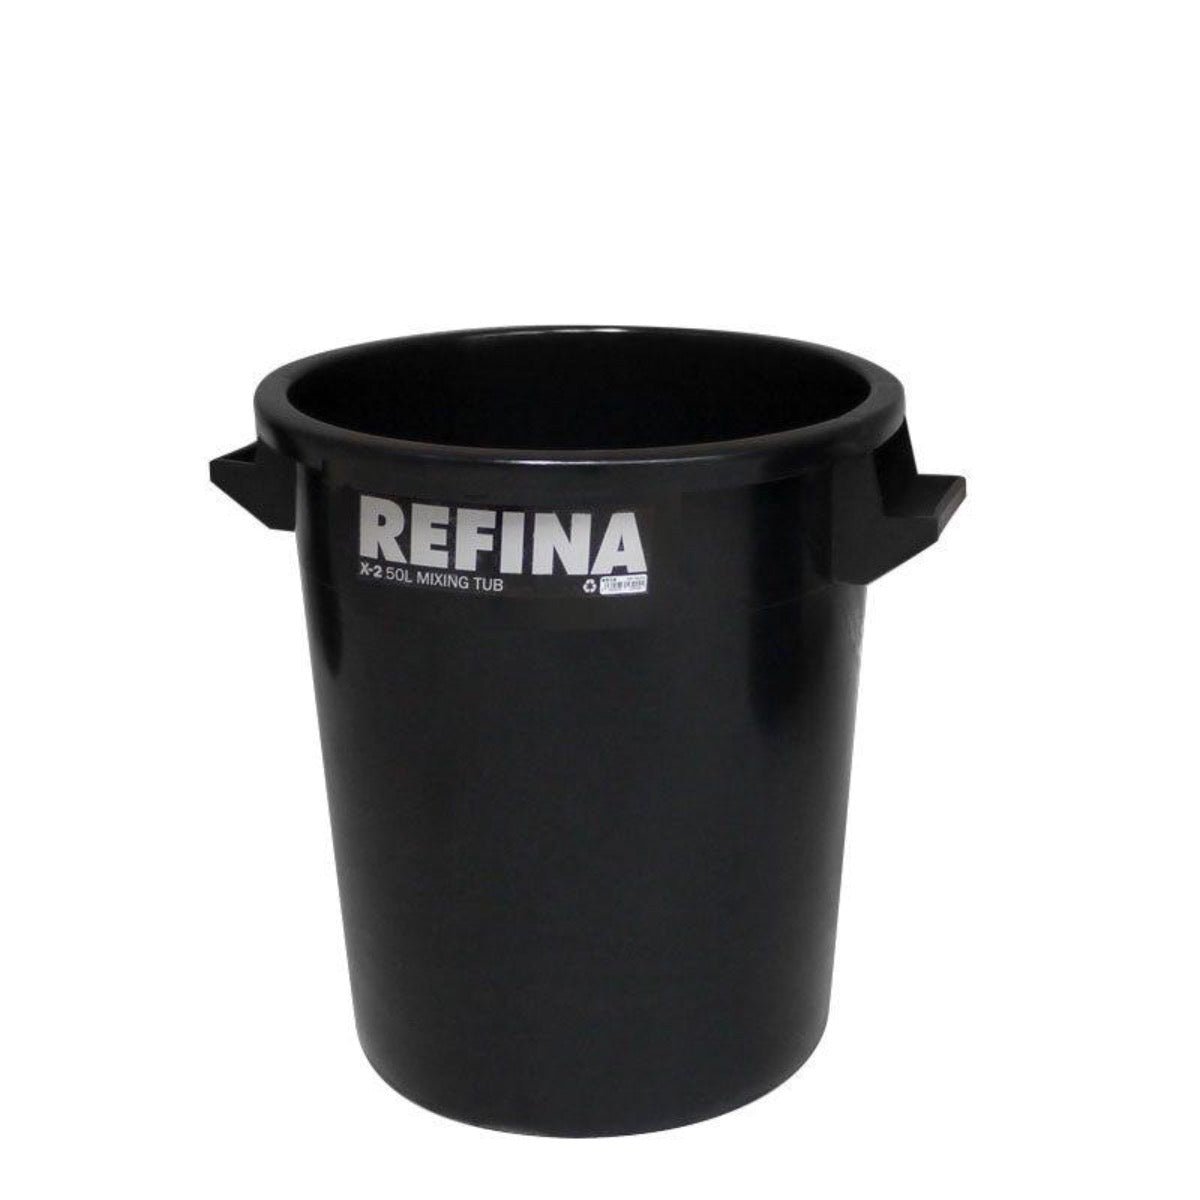 Refina X-2 plastic mixing tub 50L black (321041) - Amaroc - Render & Drylining Supplies